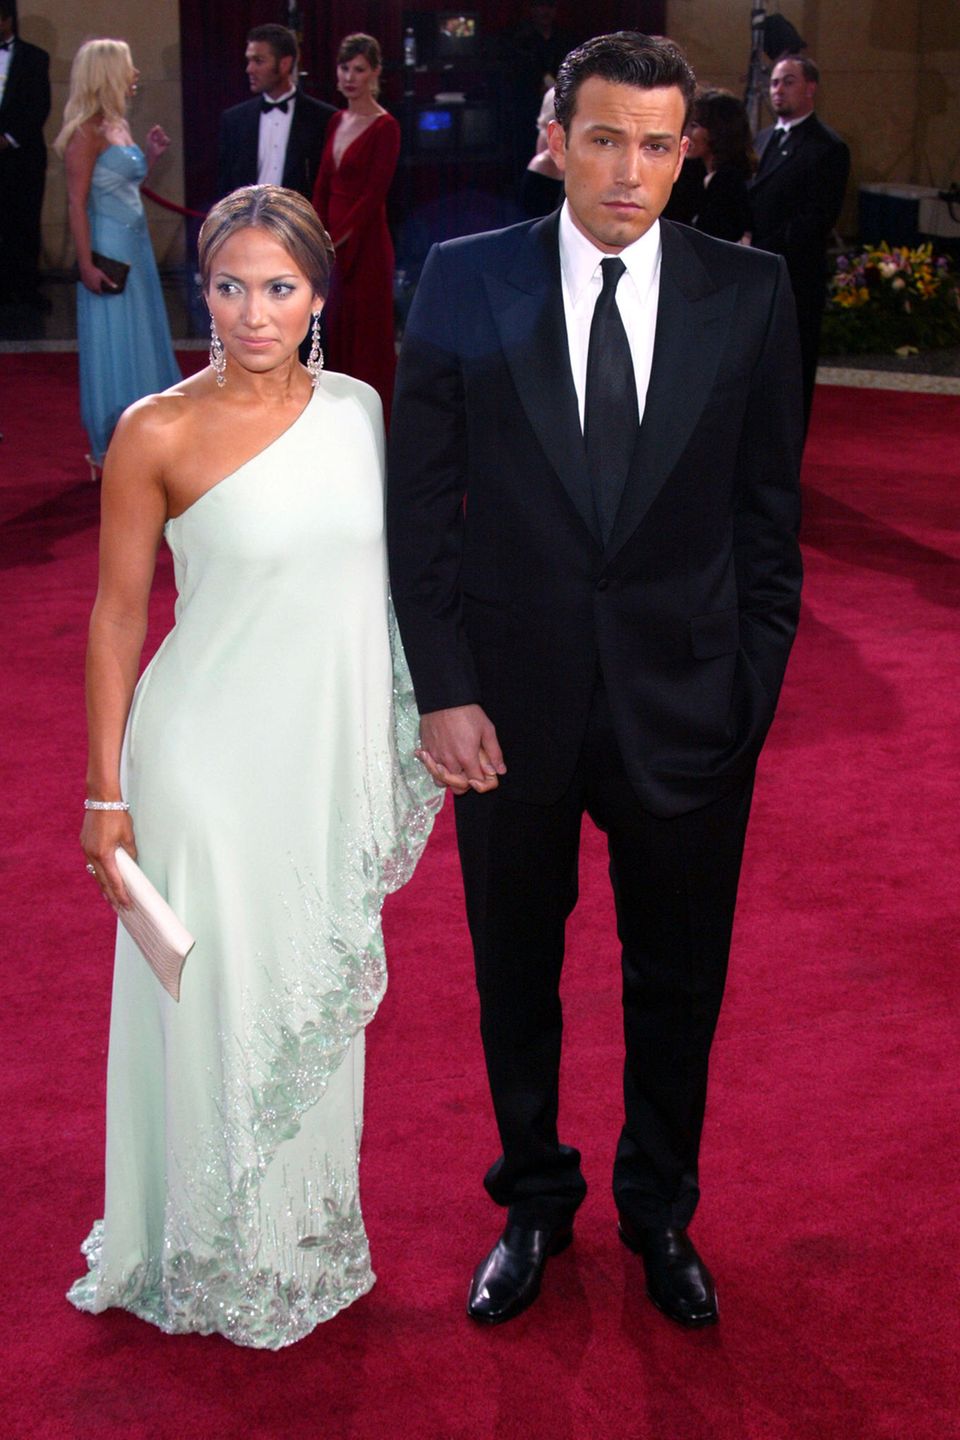 Beinahe schüchtern wirken Jennifer Lopez und Ben Affleck nachdem sie den Red-Carpet der Oscars im Jahr 2003 betreten haben. J.Lo trägt ein One-Shoulder-Dress mit Glitzer-Applikationen am Saum in der Farbe Weiß. Ben trägt einen schwarzen Anzug mit Krawatte. Unsichere Blicke, die Hände ineinander verankert. 